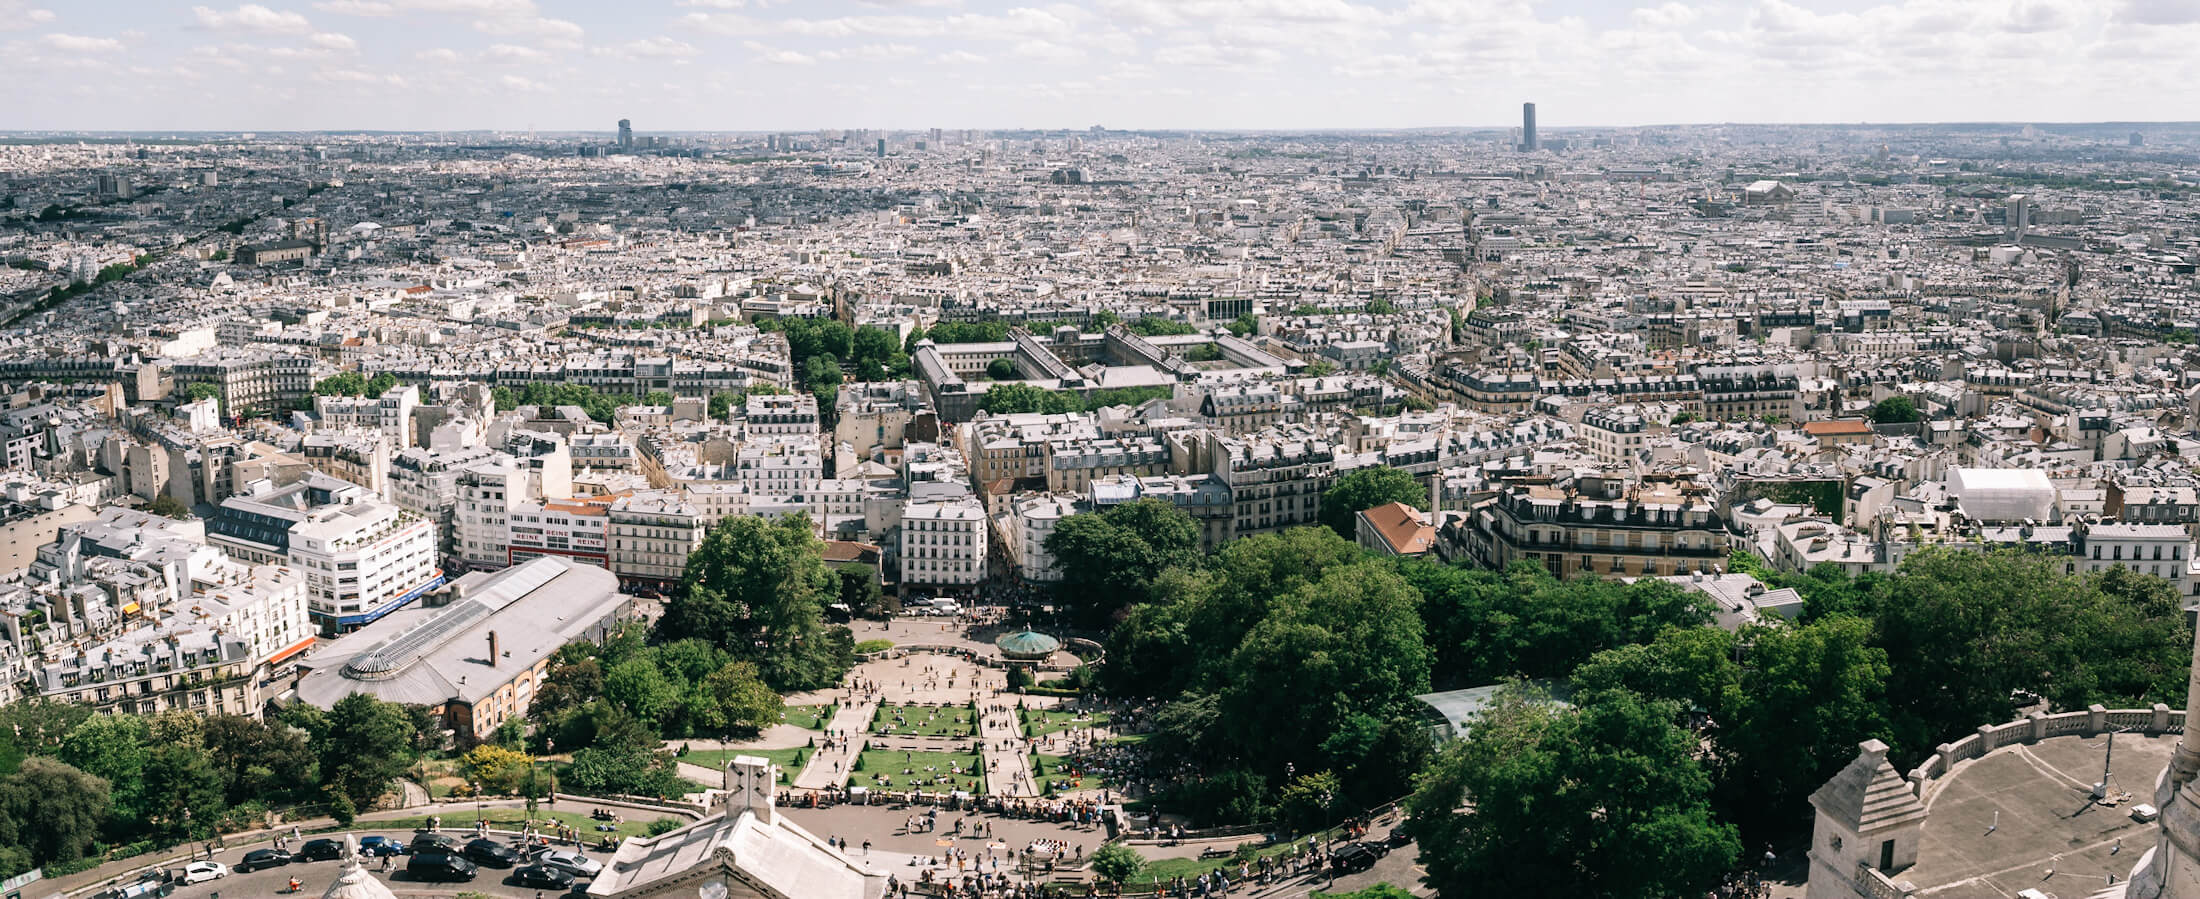 View from Sacré-Coeur, Montmartre, Paris